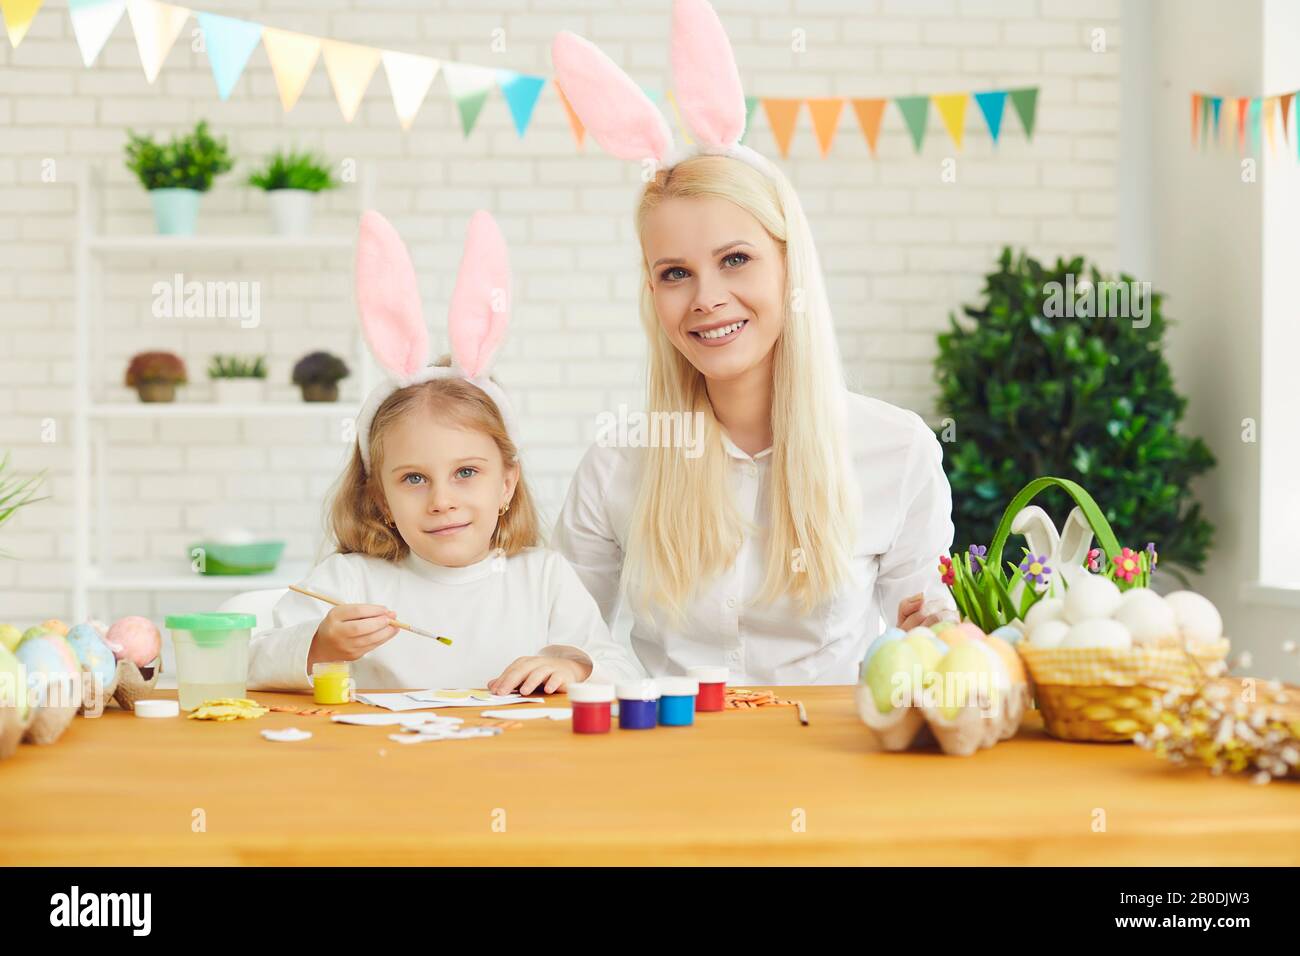 Joyeuses pâques. La fille et la mère aux oreilles de lapin décorent les œufs de Pâques assis à une table Banque D'Images